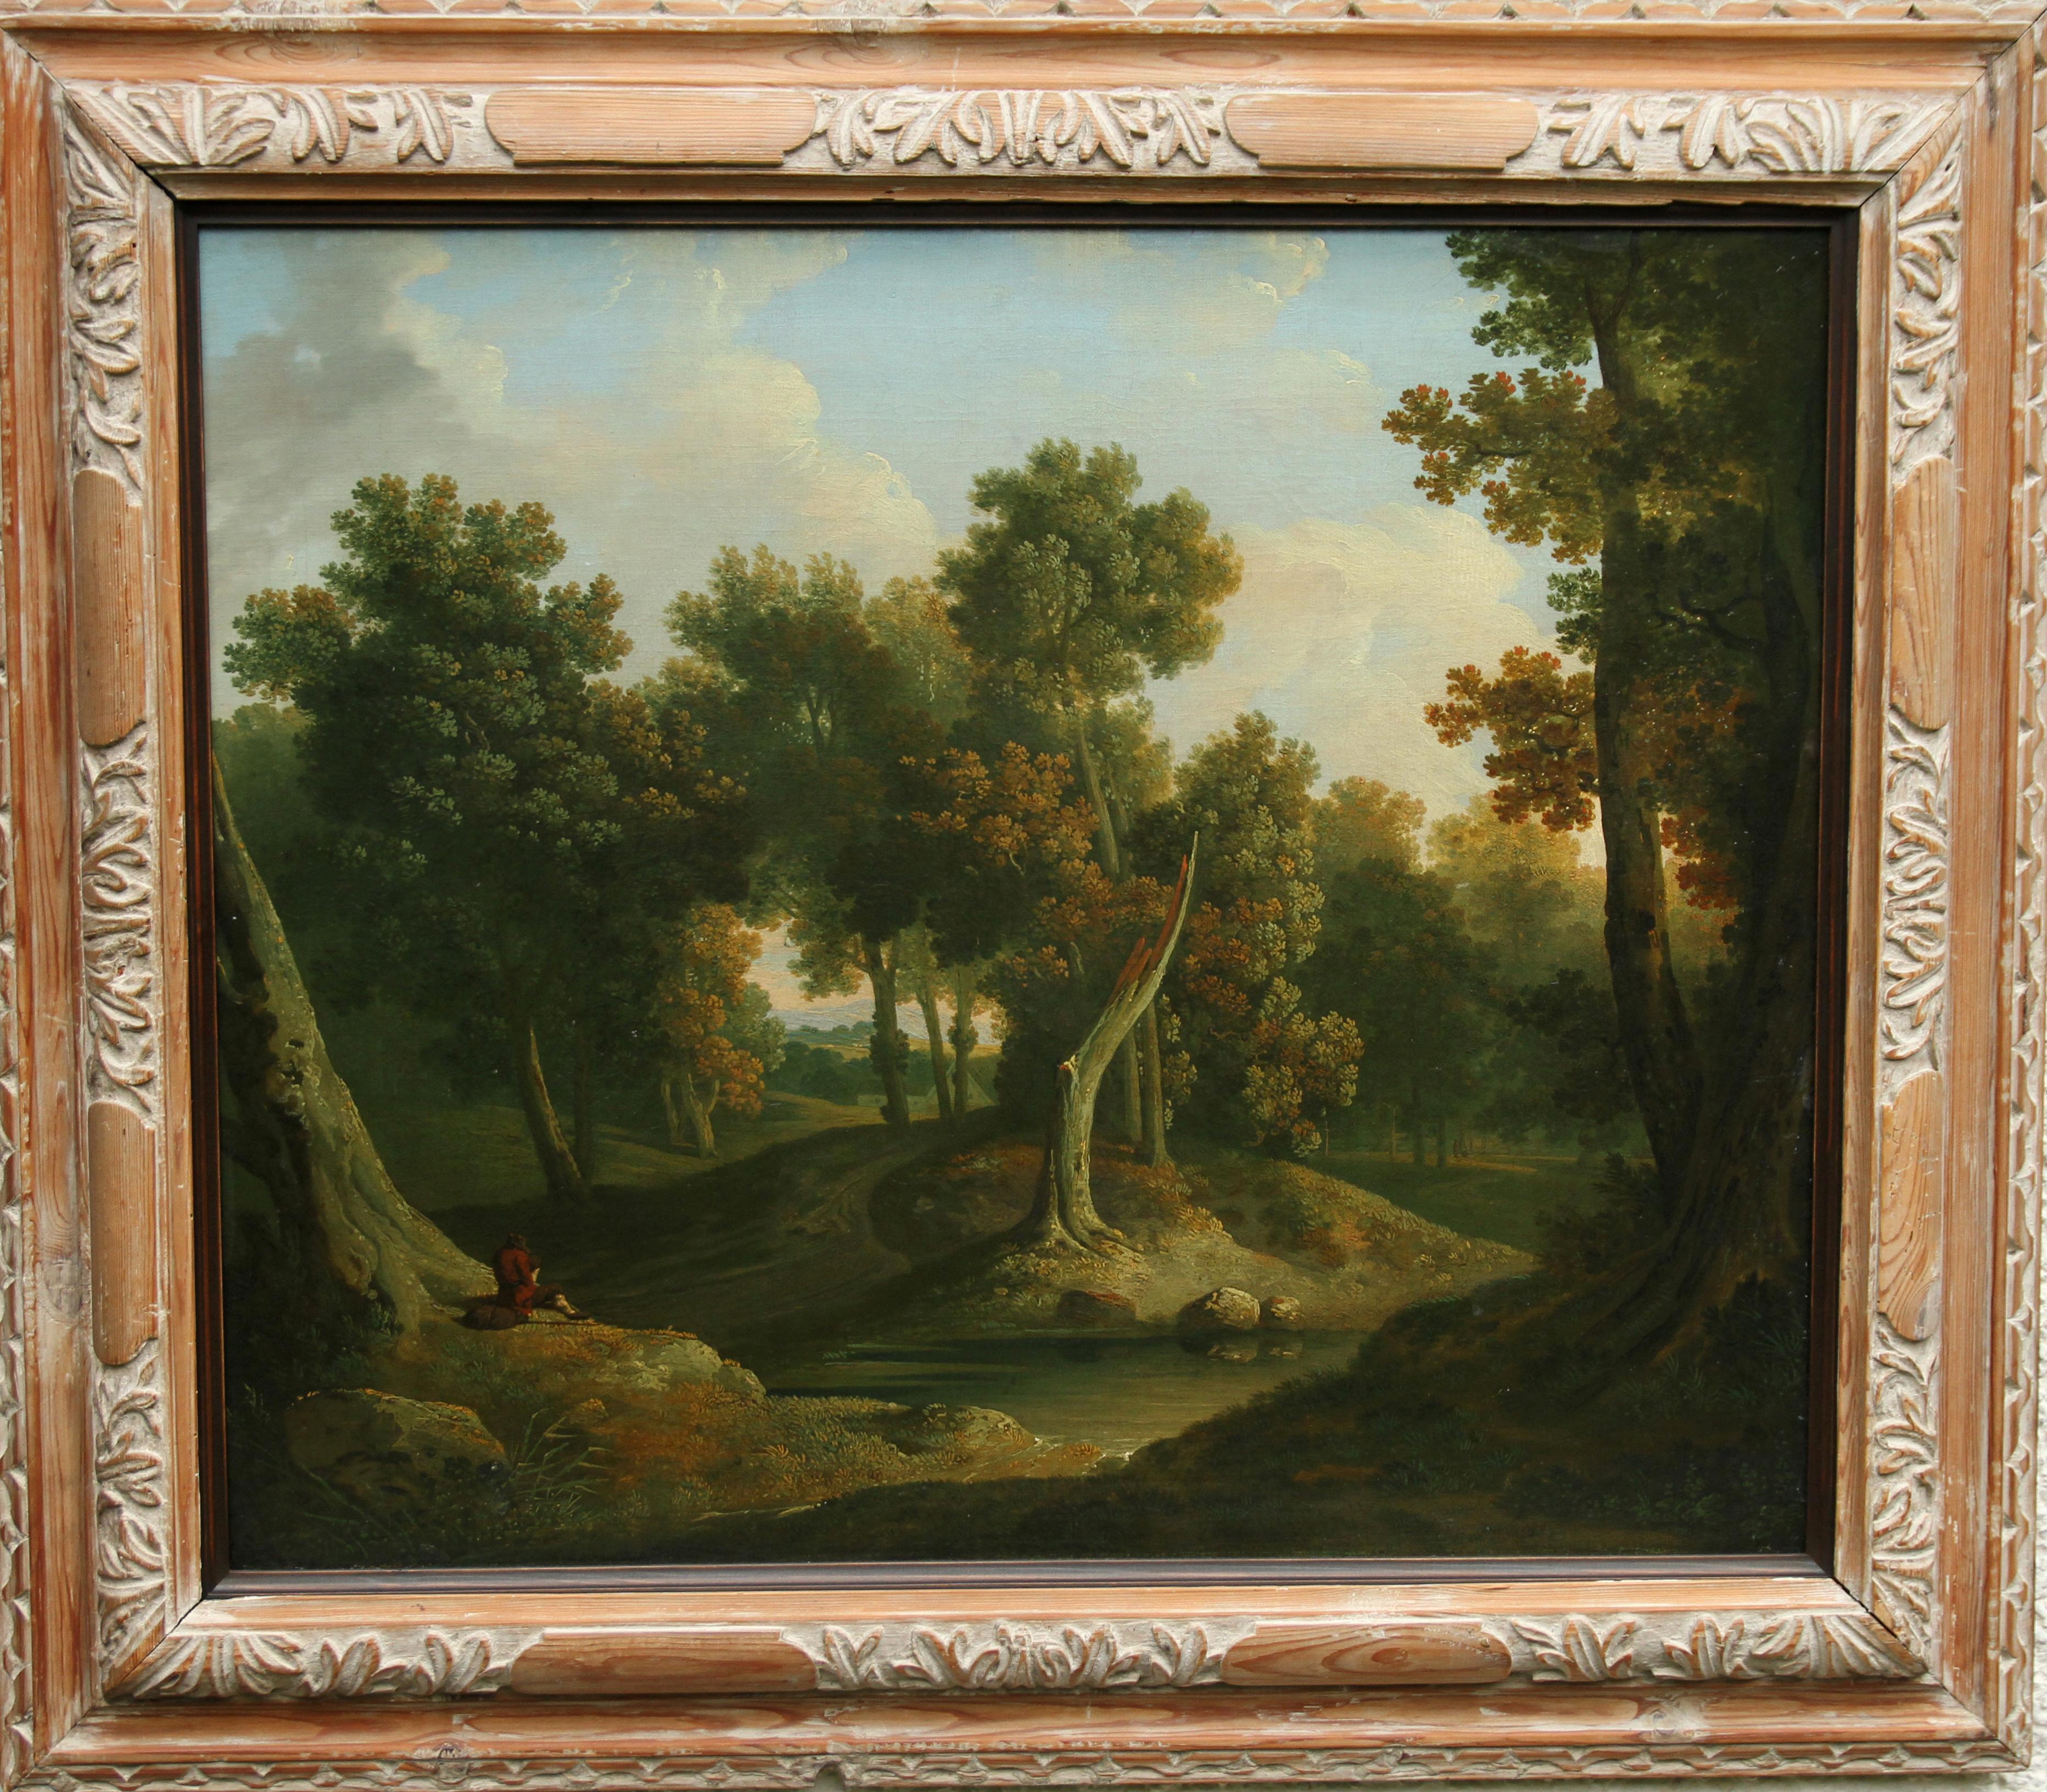 Paisaje arbolado del Viejo Maestro - Pintura al óleo irlandesa de 1830 sobre el arte del bosque  - Painting Antiguos maestros de James Arthur O'Connor